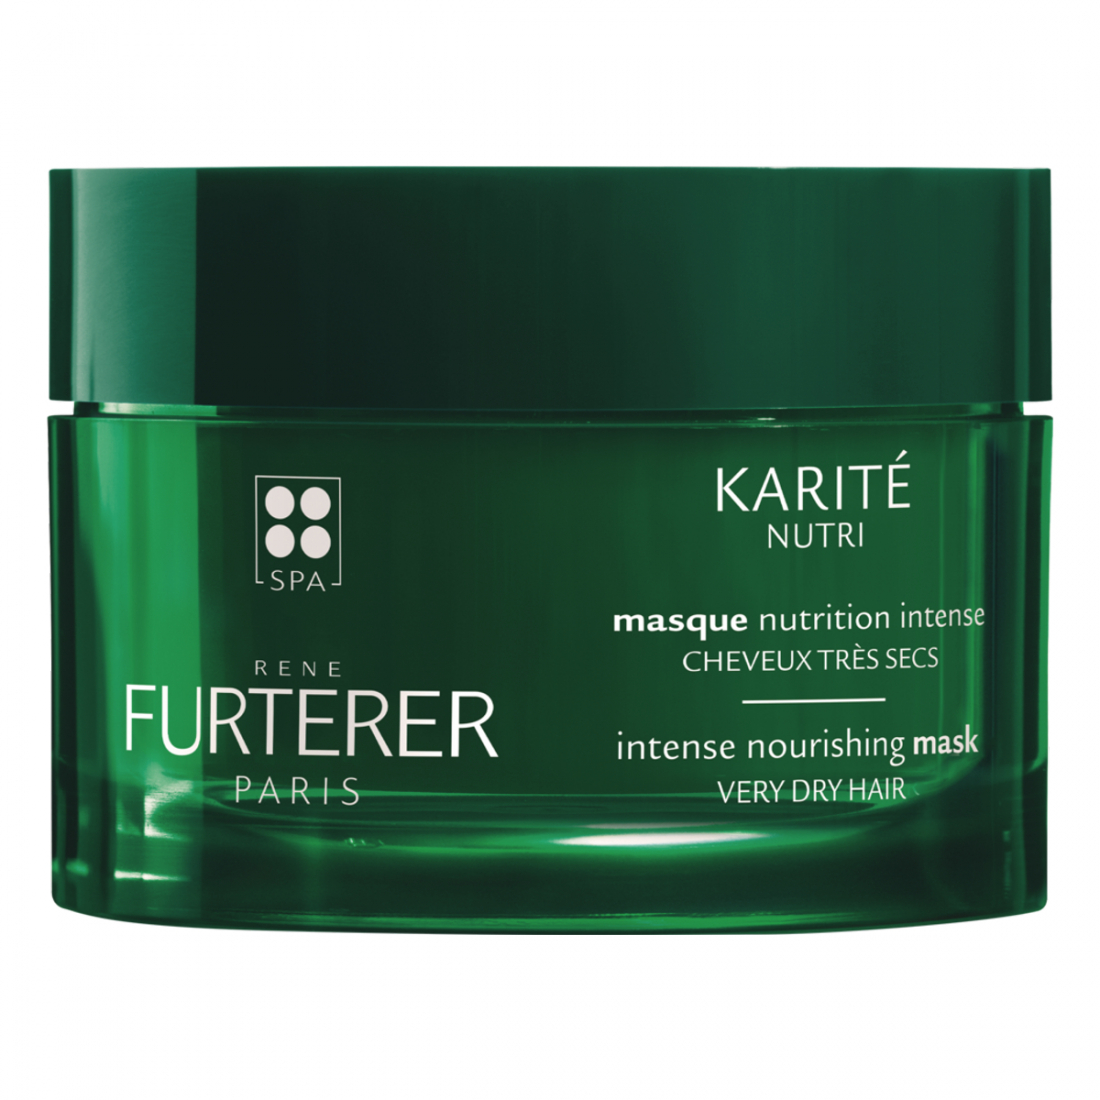 'Karité Nutri Rituel Masque Nutrition Intense' - 200 ml